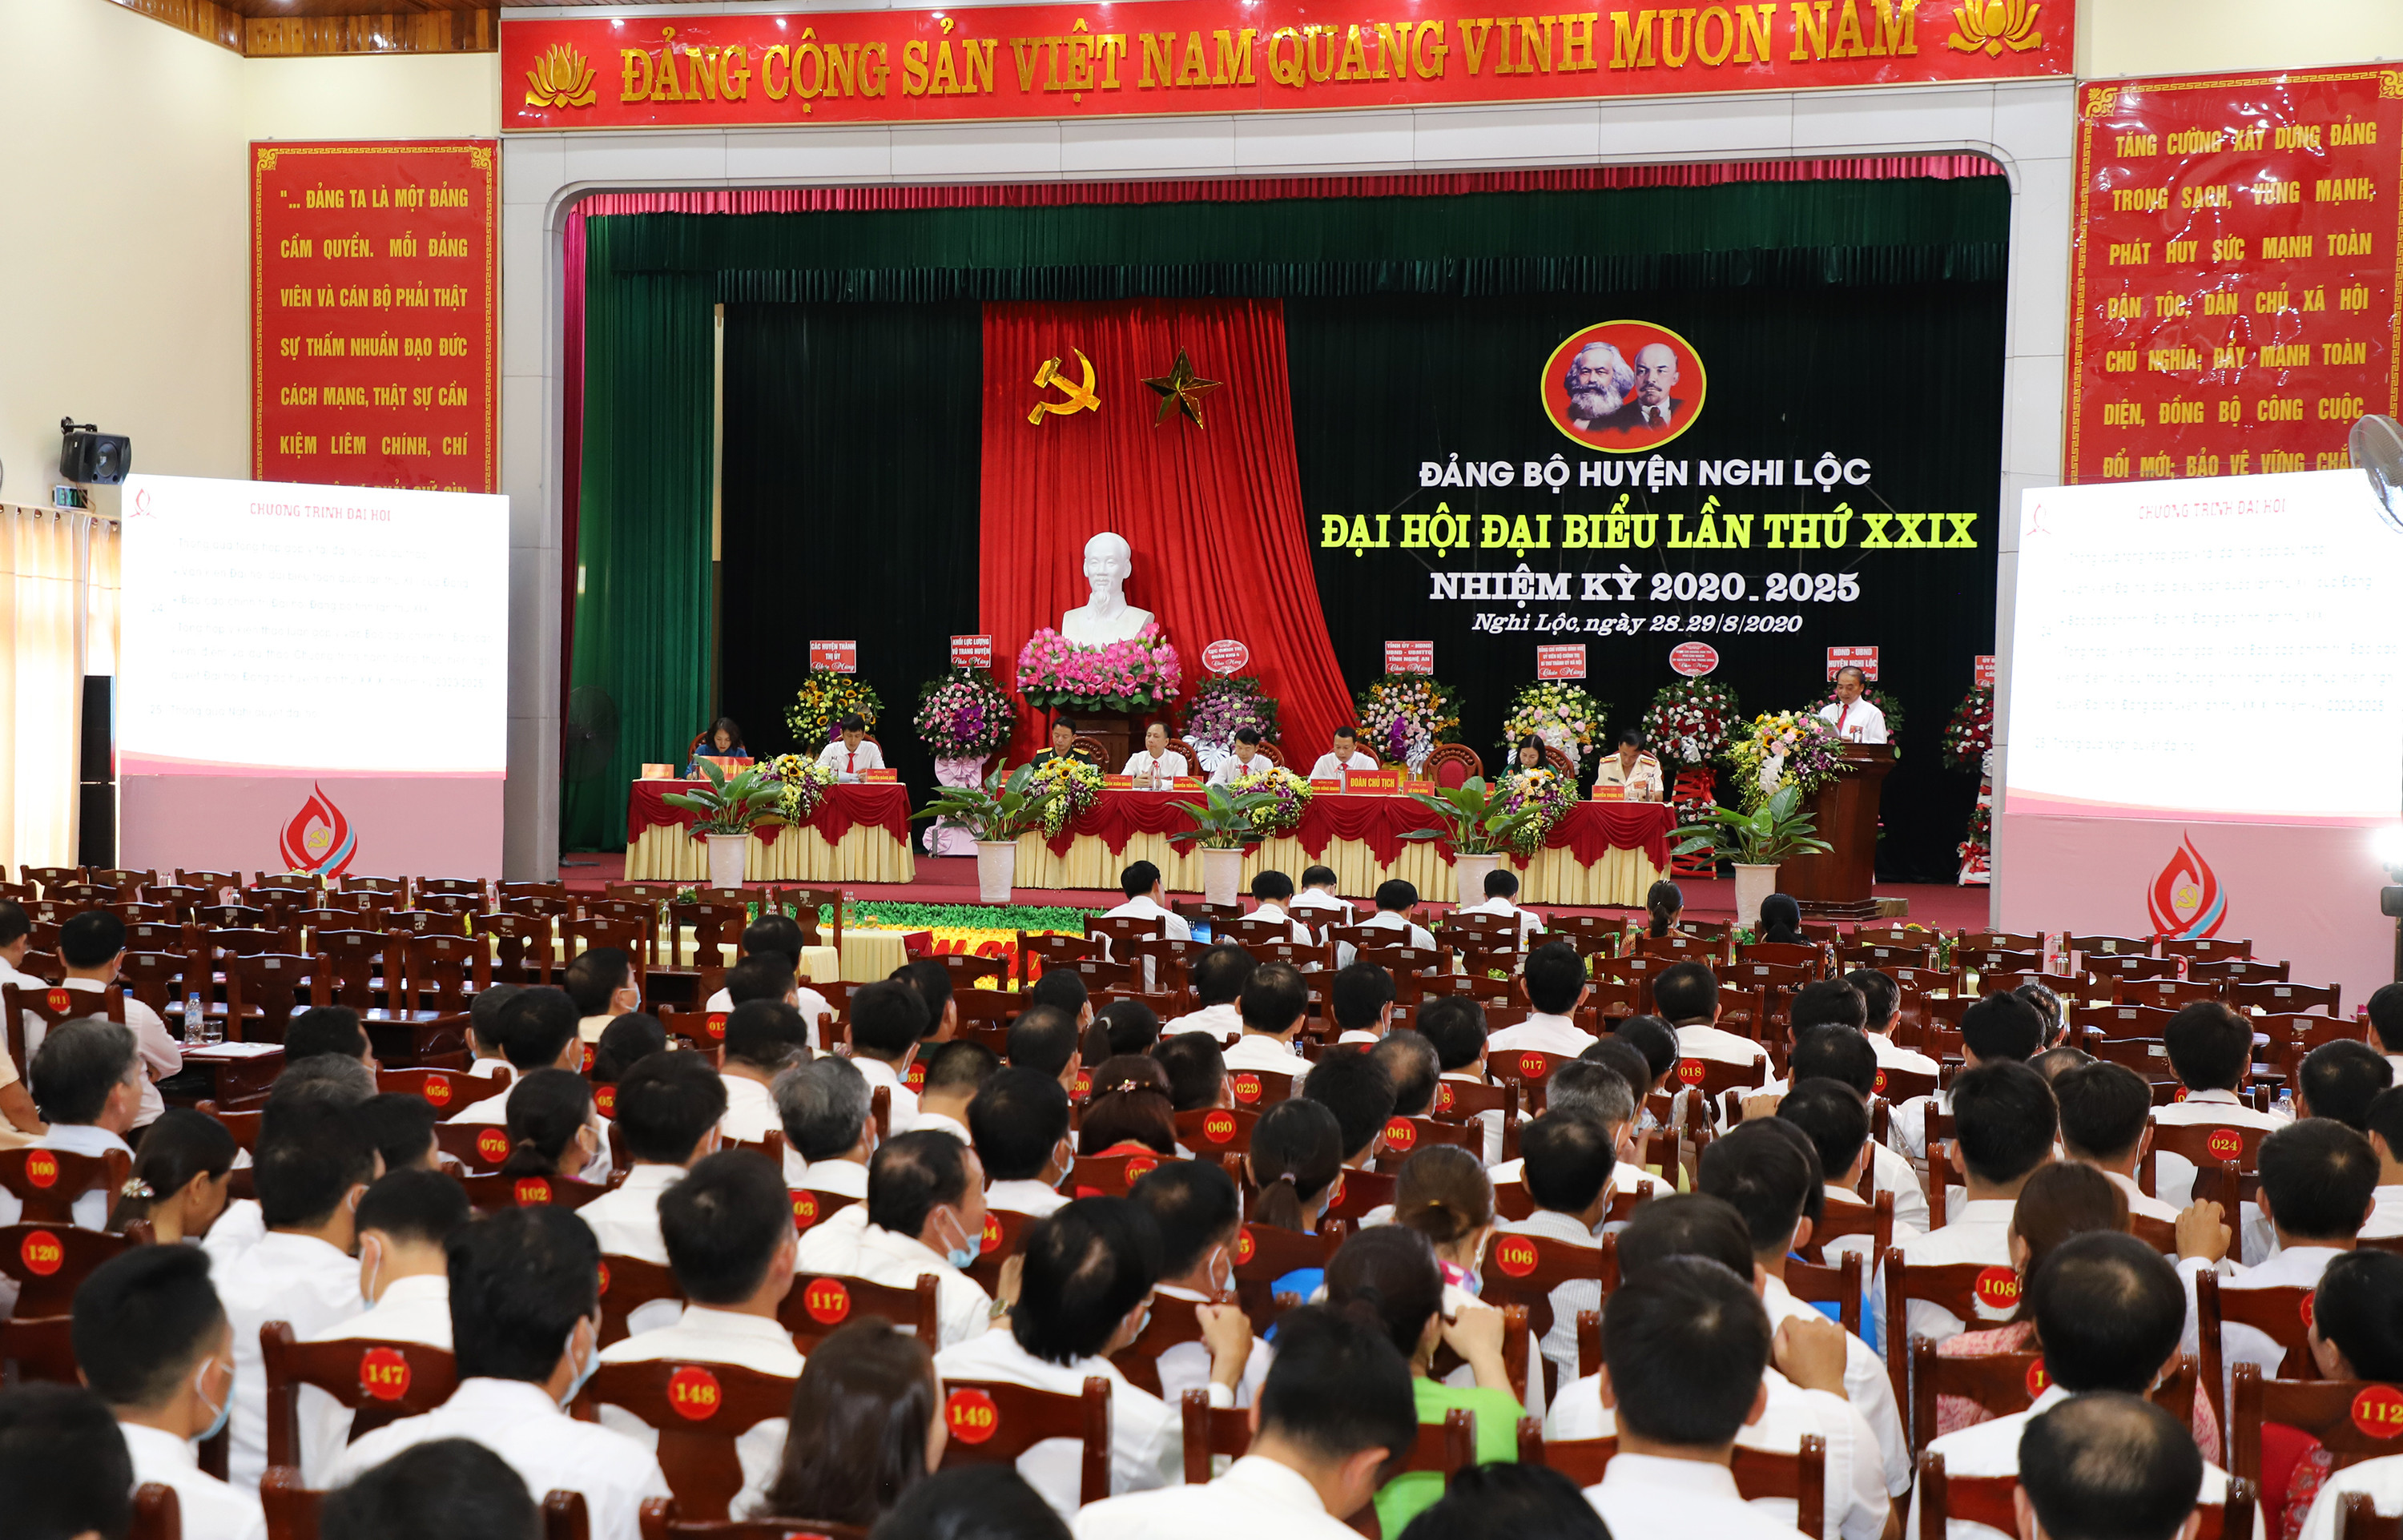 Toàn cảnh phiên trù bị Đại hội đại biểu Đảng bộ huyện Nghi Lộc lần thứ XXIX, nhiệm kỳ 2020 - 2025. Ảnh: Phạm Bằng